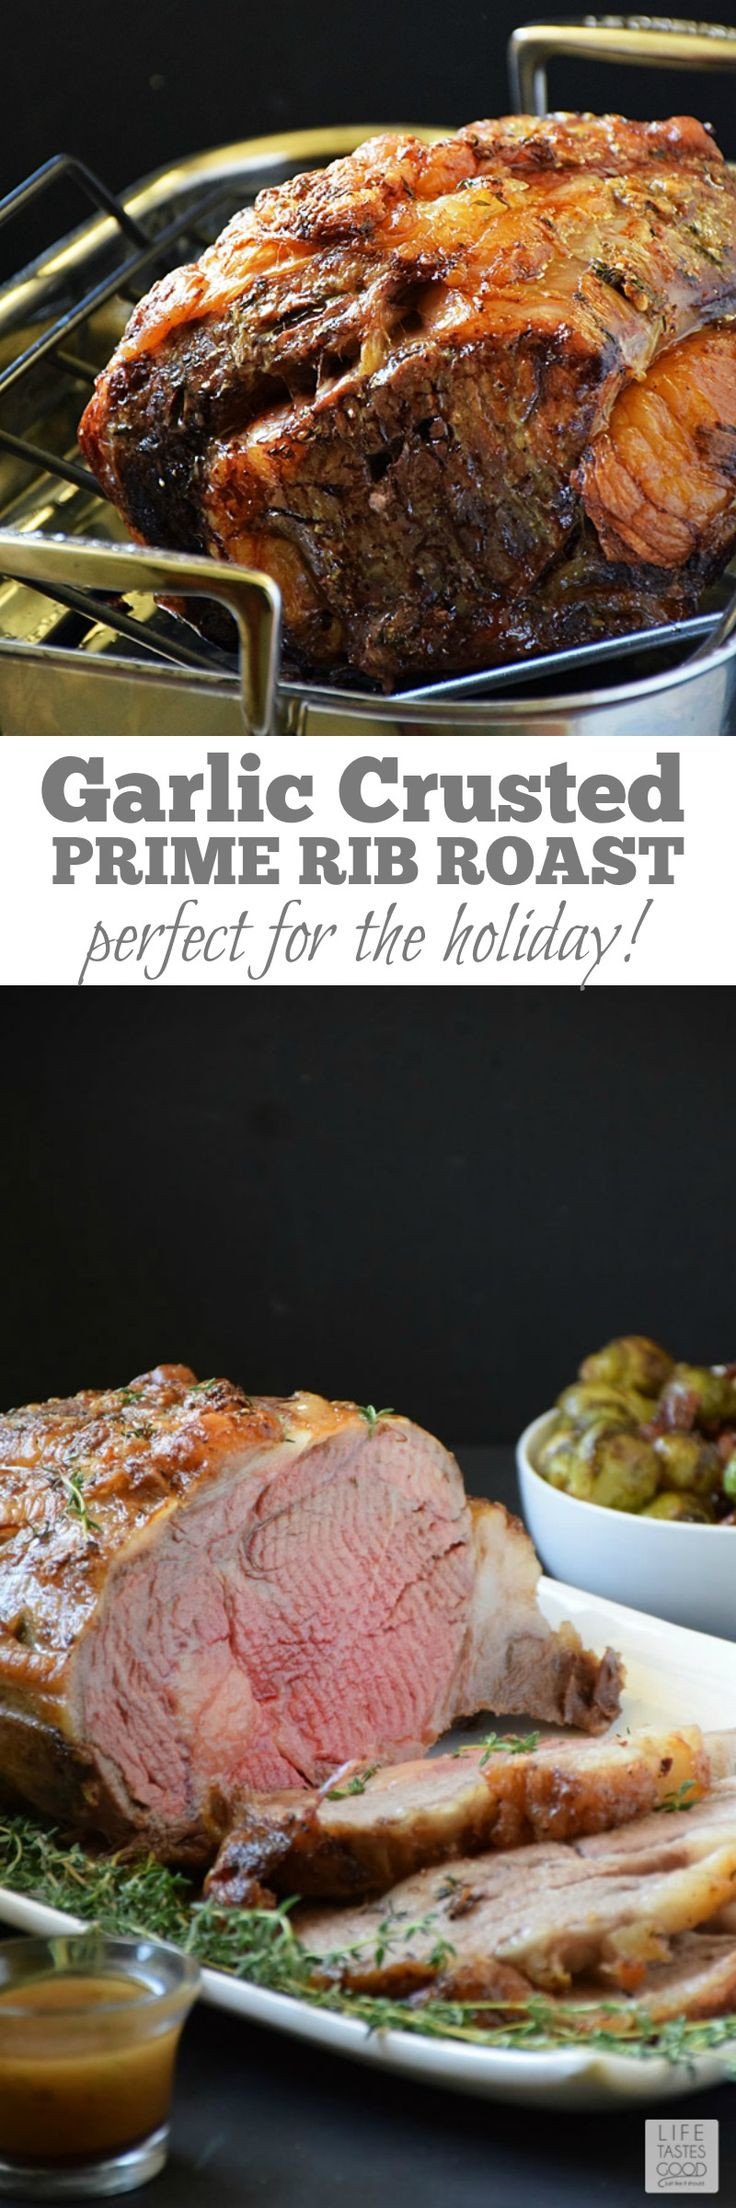 Sides For Prime Rib Christmas Dinner
 Best 25 Xmas dinner ideas ideas on Pinterest